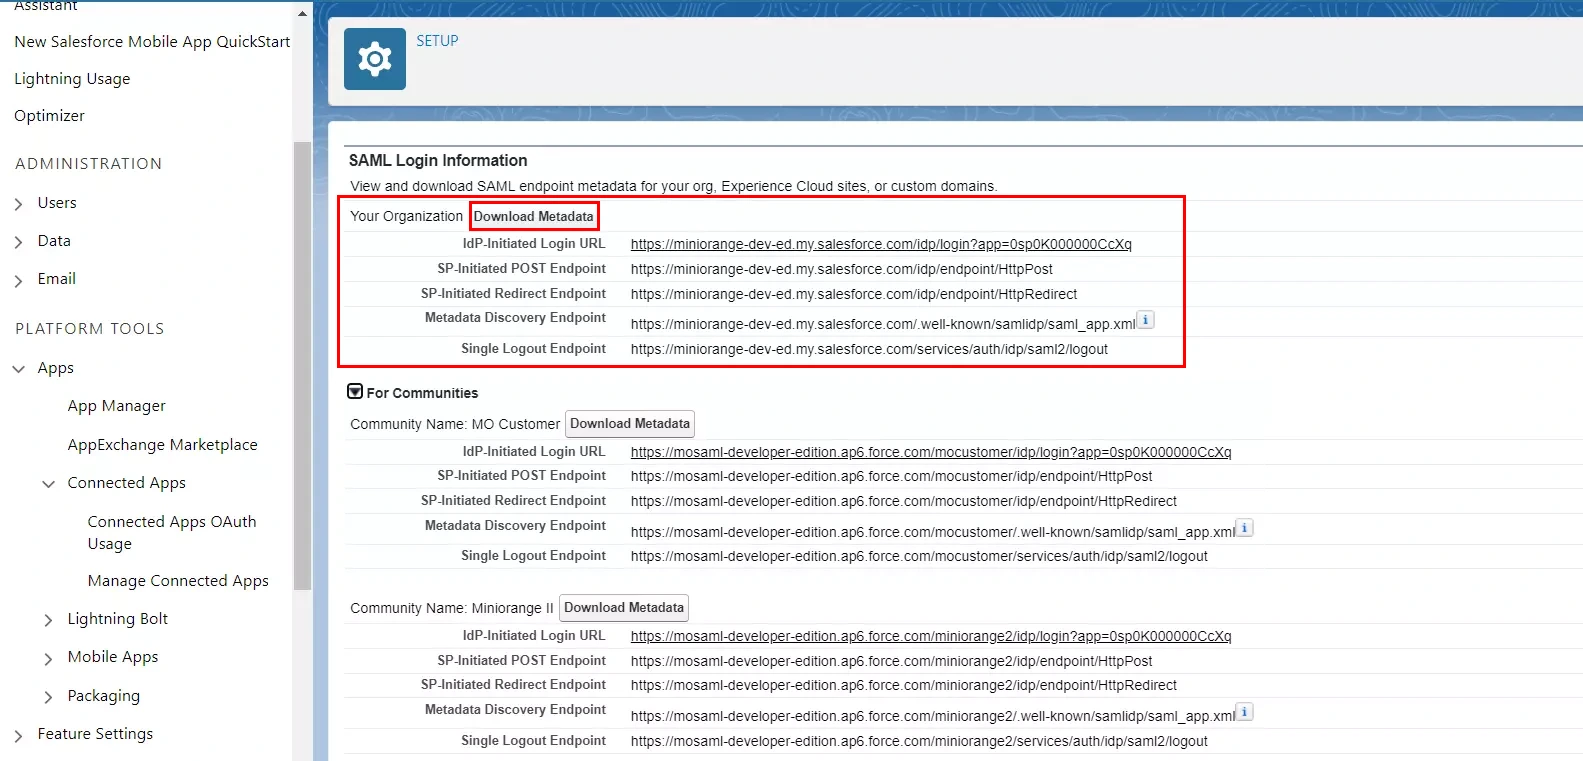 Inicio de sesión único (SSO) de Joomla SAML utilizando el proveedor de identidad de Salesforce, descarga de metadatos de proveedores de identidad